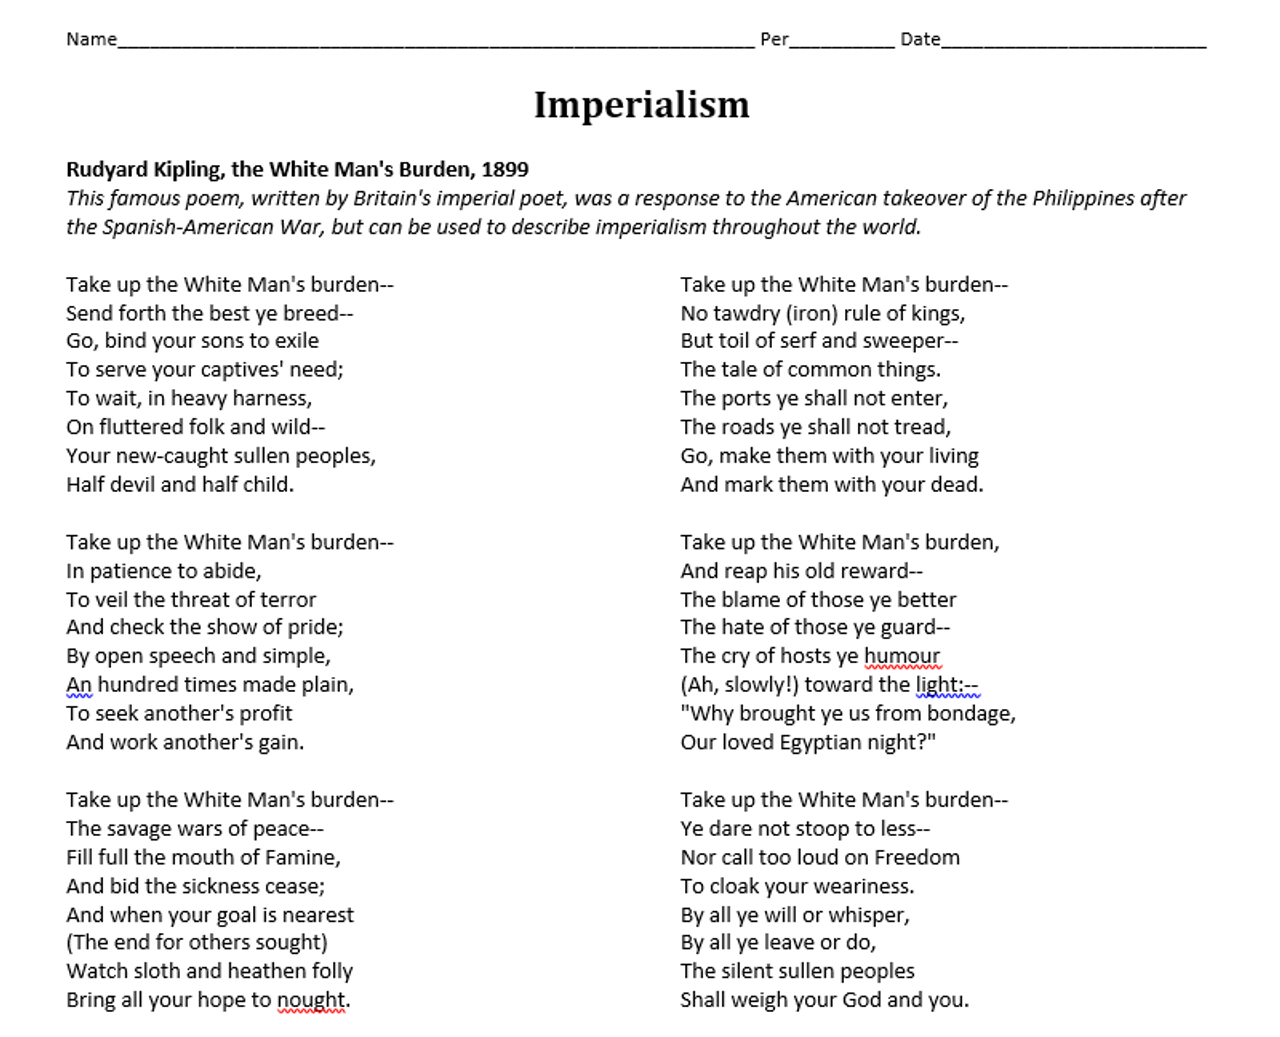 imperialism-white-man-s-burden-poem-worksheet-amped-up-learning